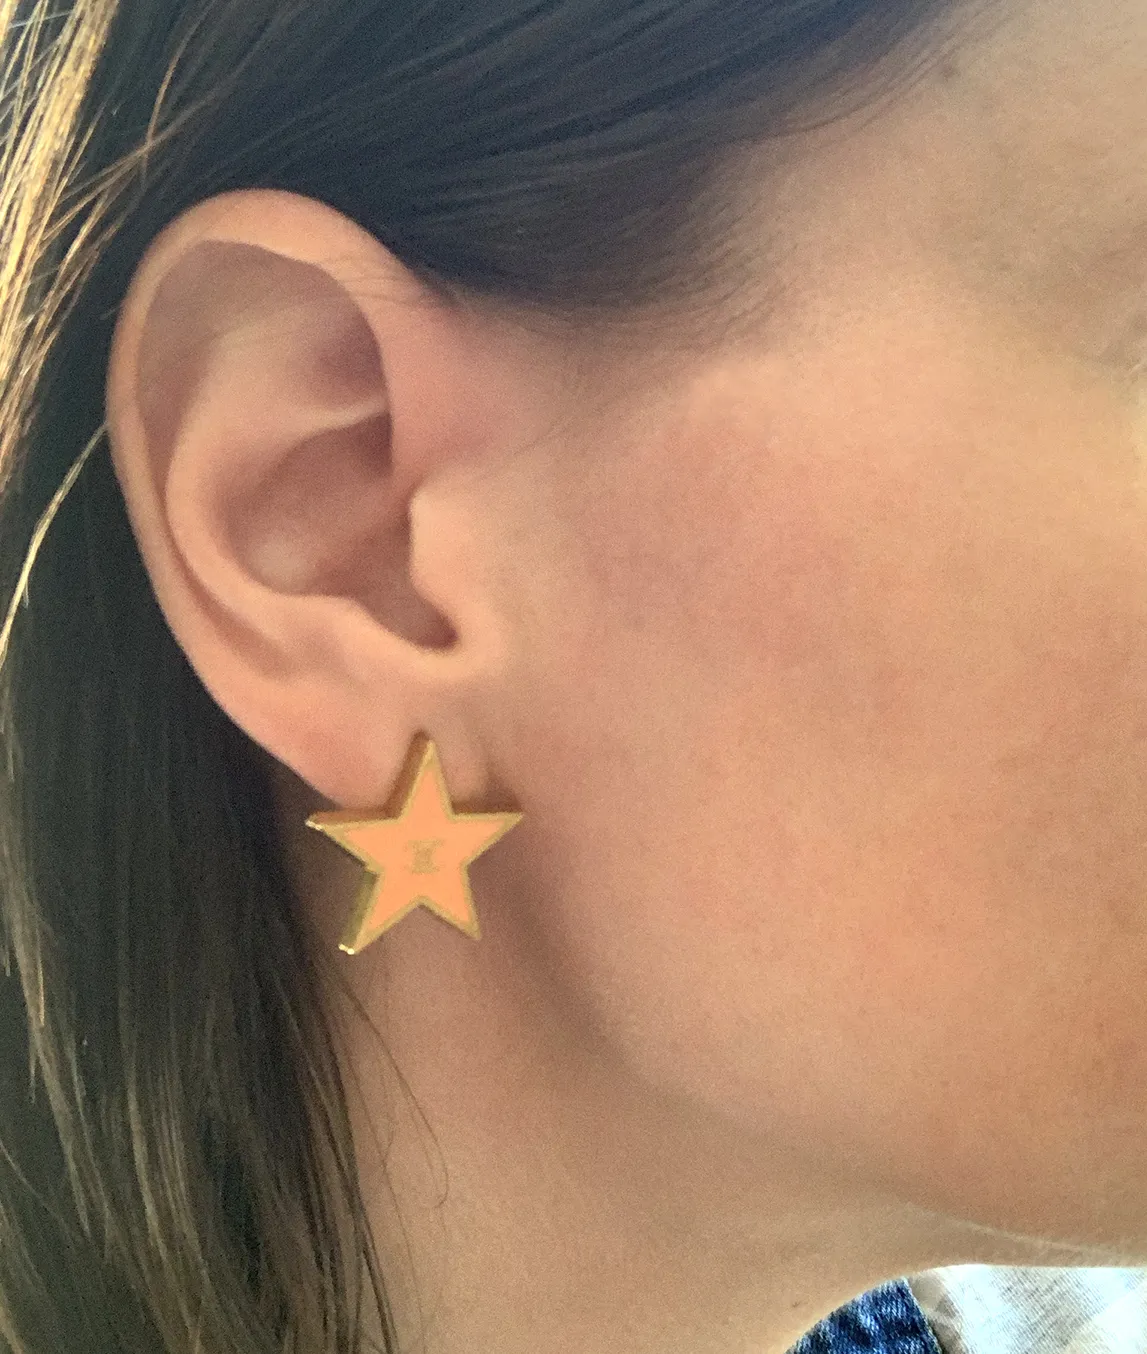 Chanel star earring on the ear